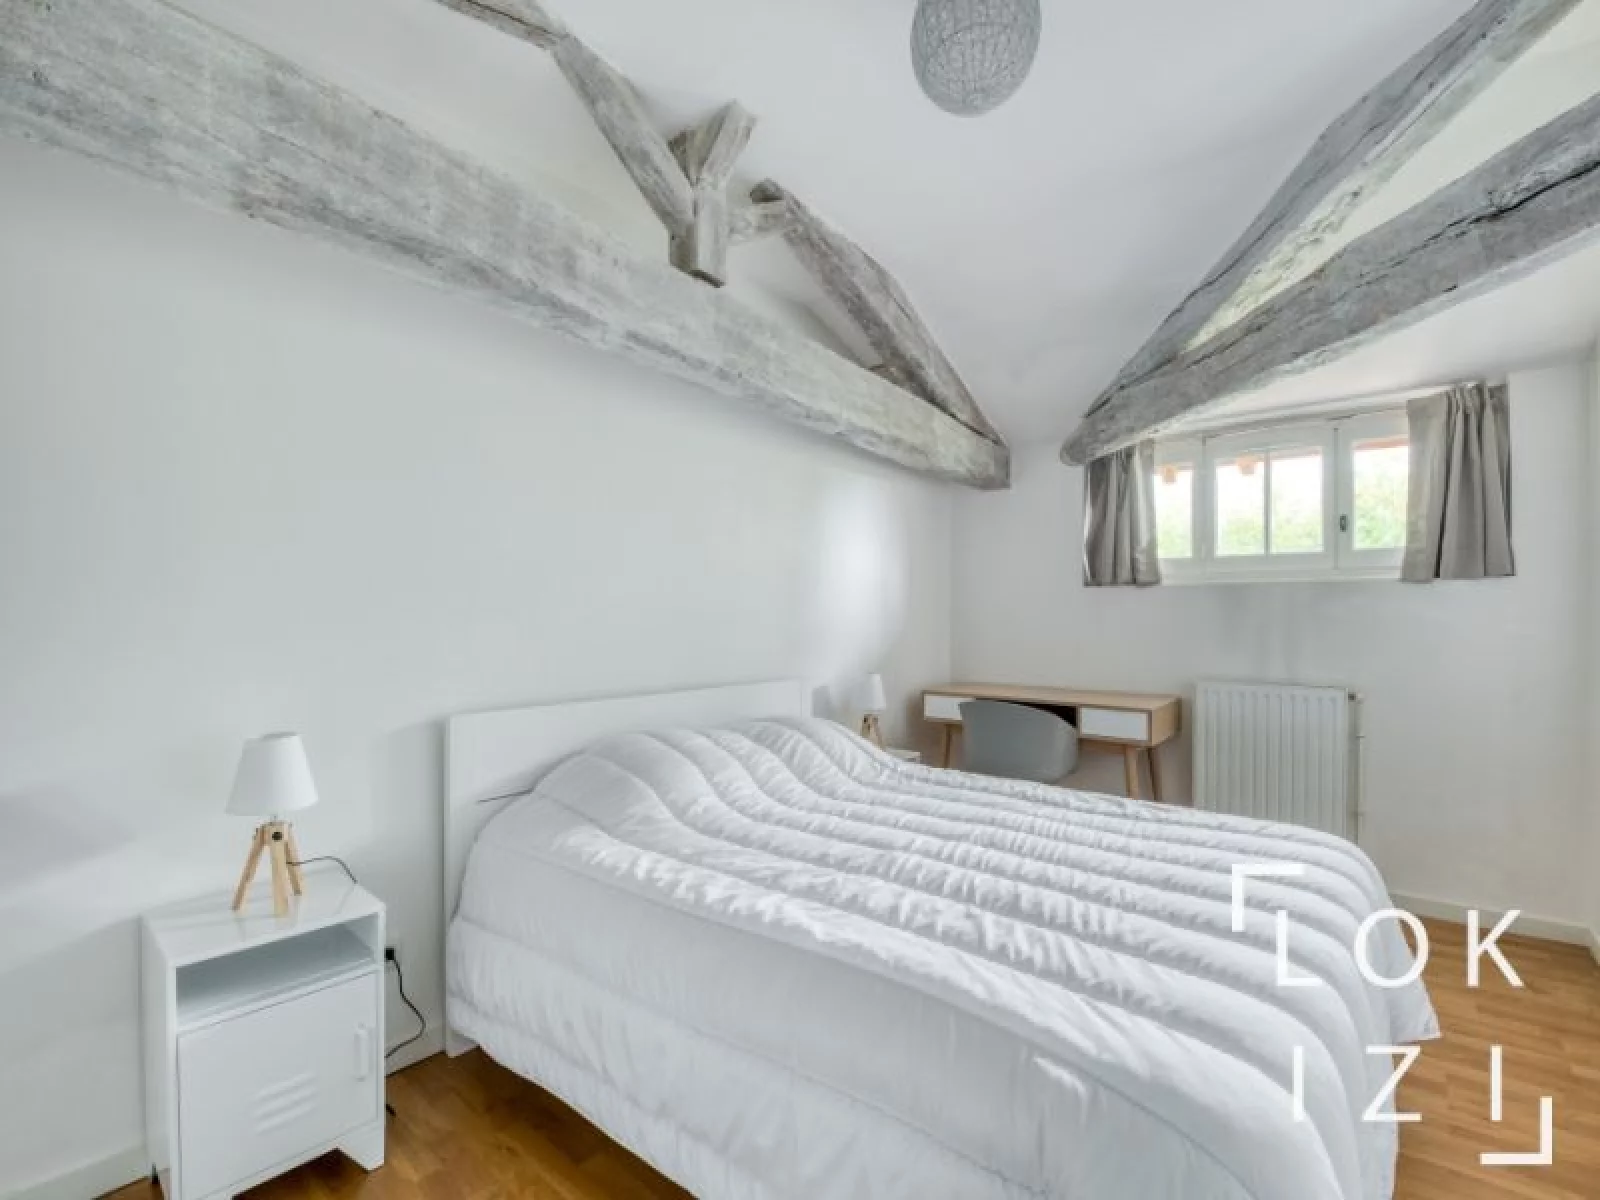 Location appartement meublé 3 pièces 110m² (Toulouse - Villeneuve les Bouloc)